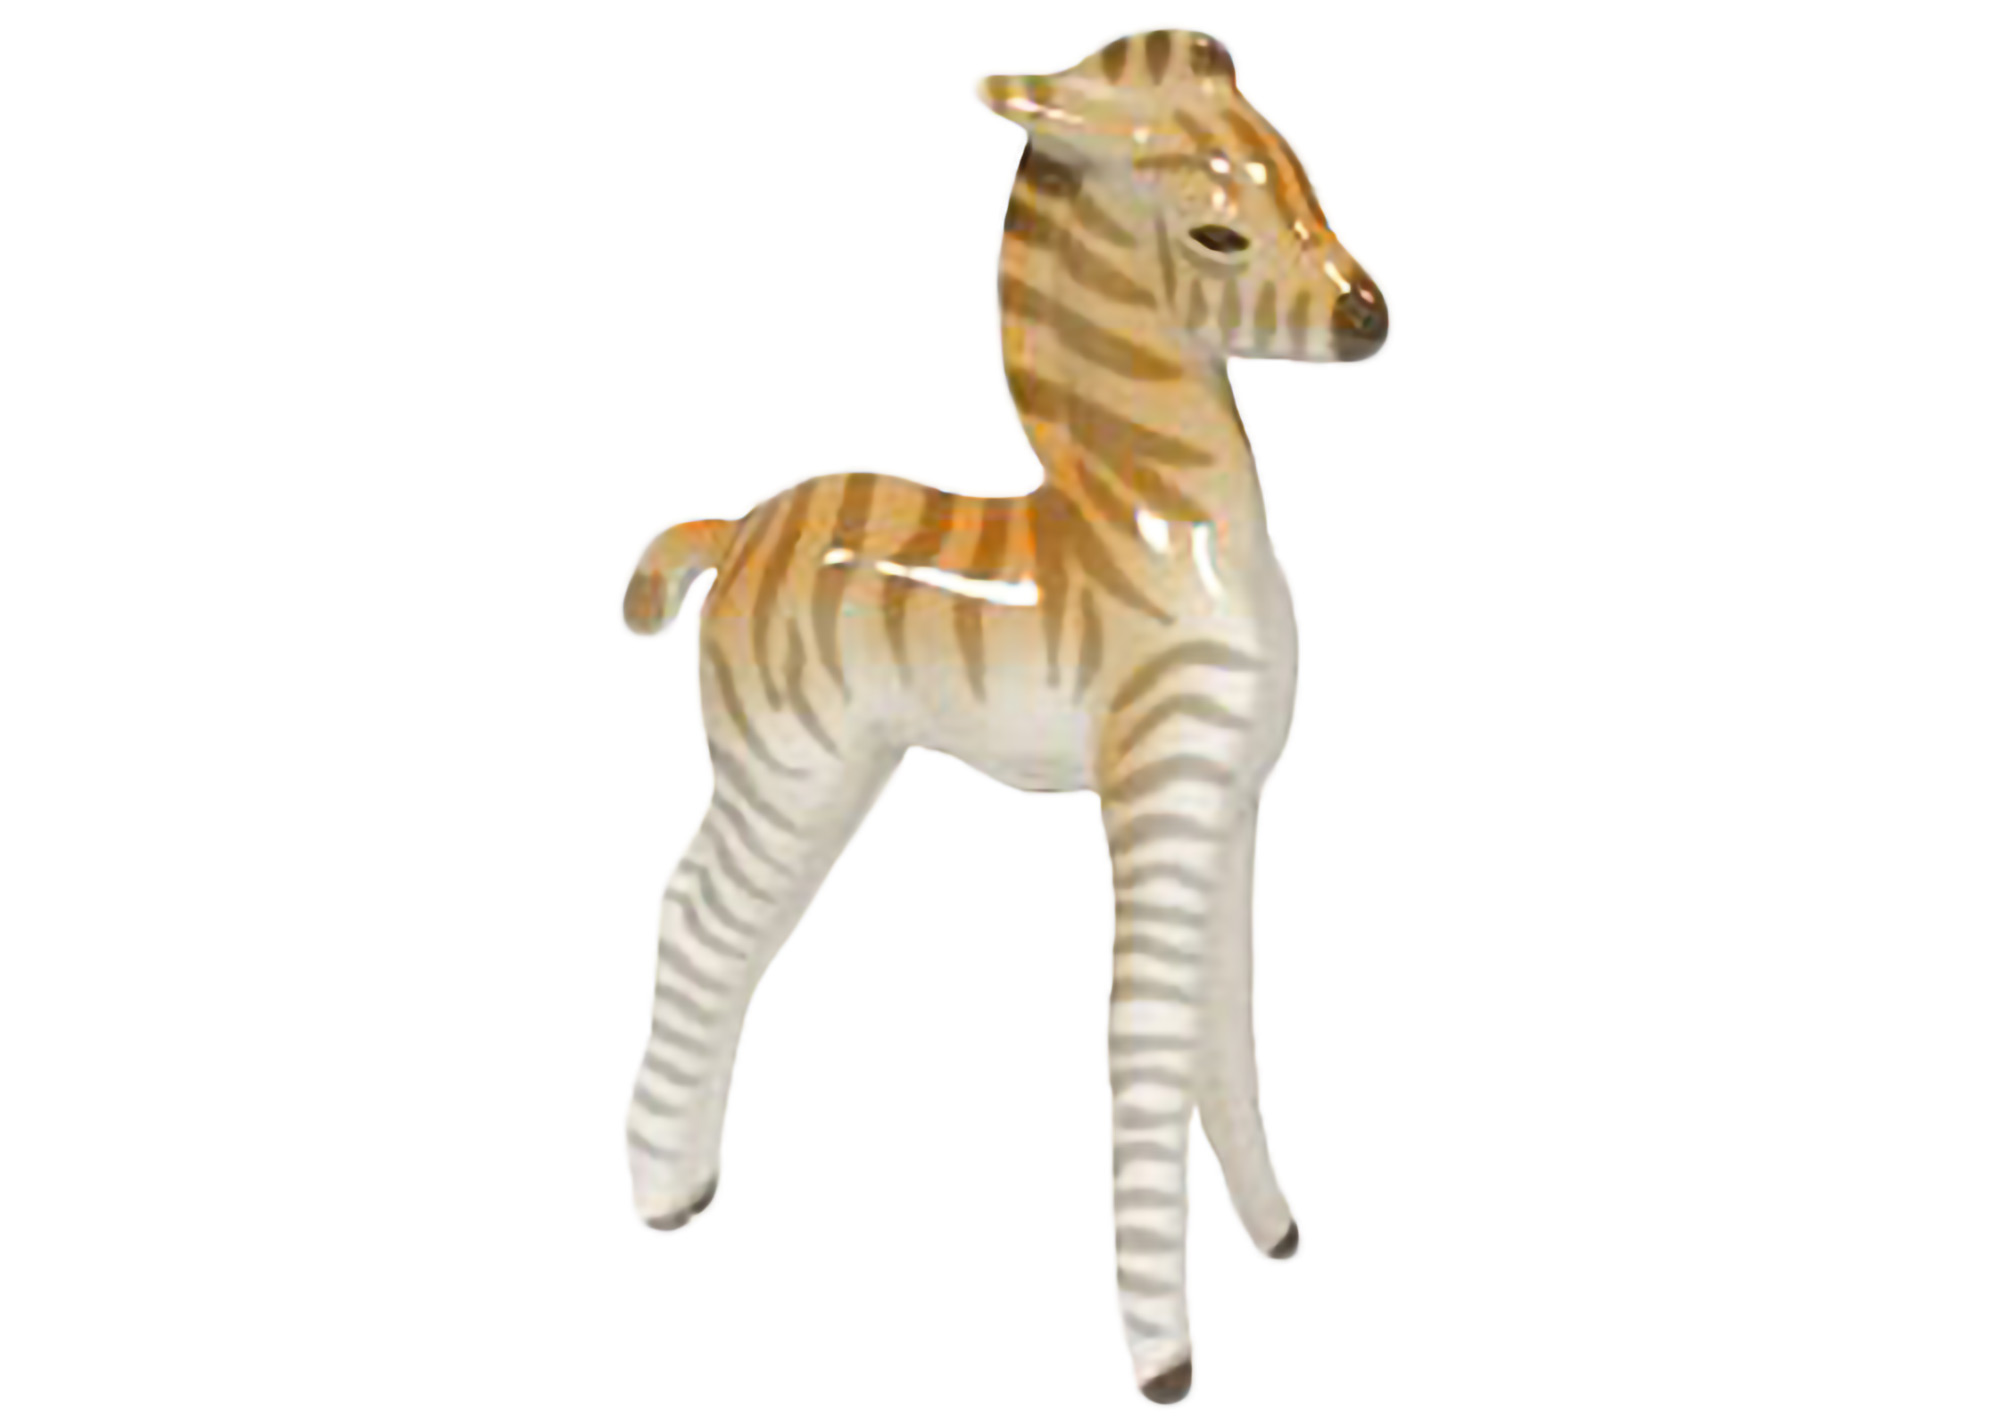 Buy Baby Zebra Standing Figurine at GoldenCockerel.com